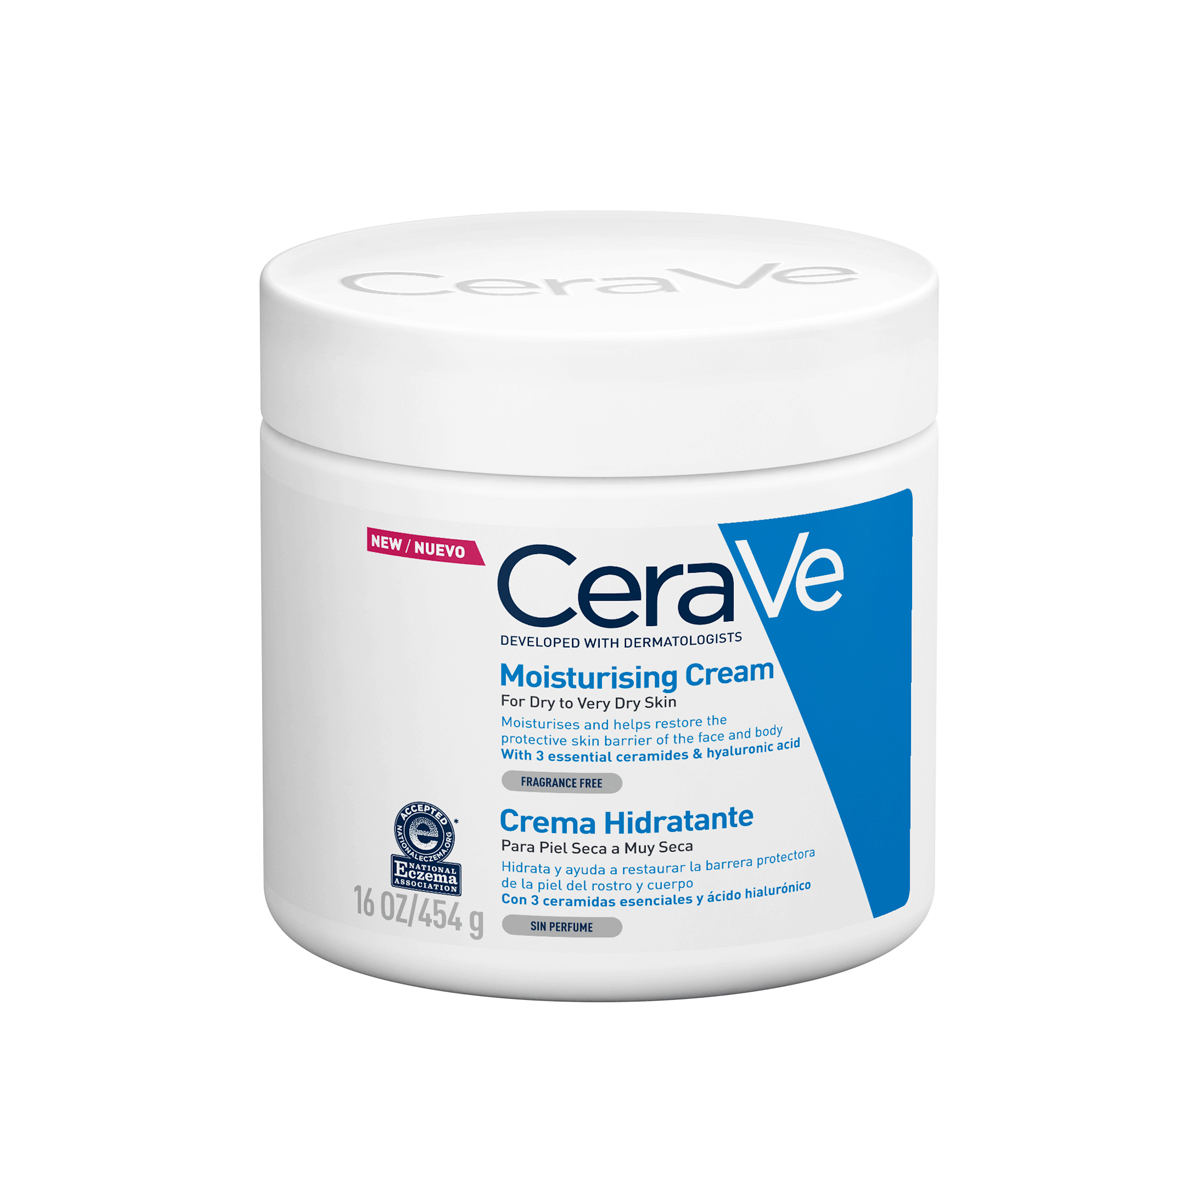 CeraVe Creme Hidratante 454g 